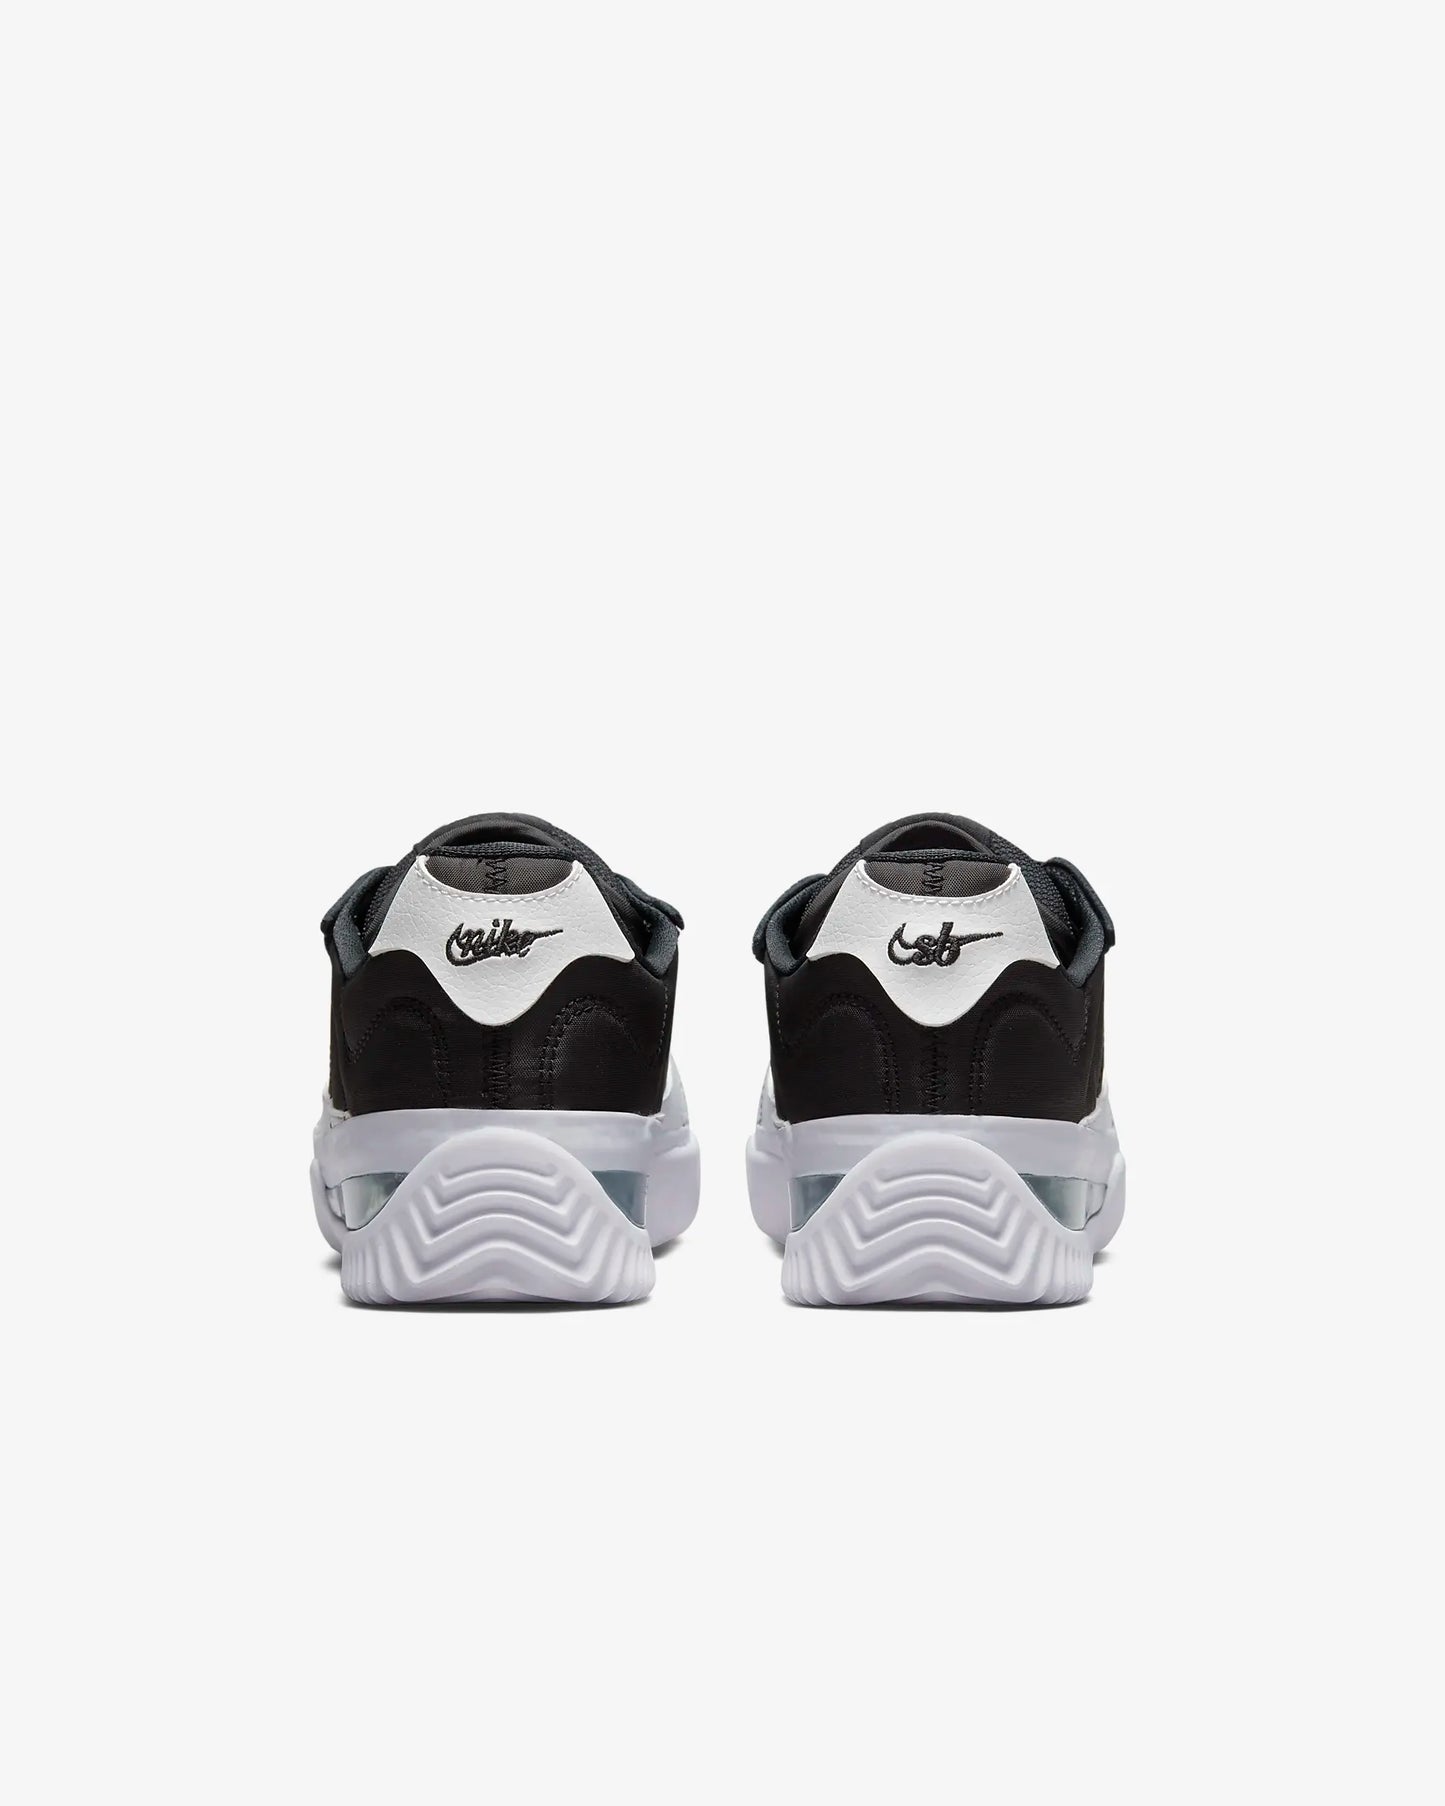 Nike Cortez BRSB Black/White